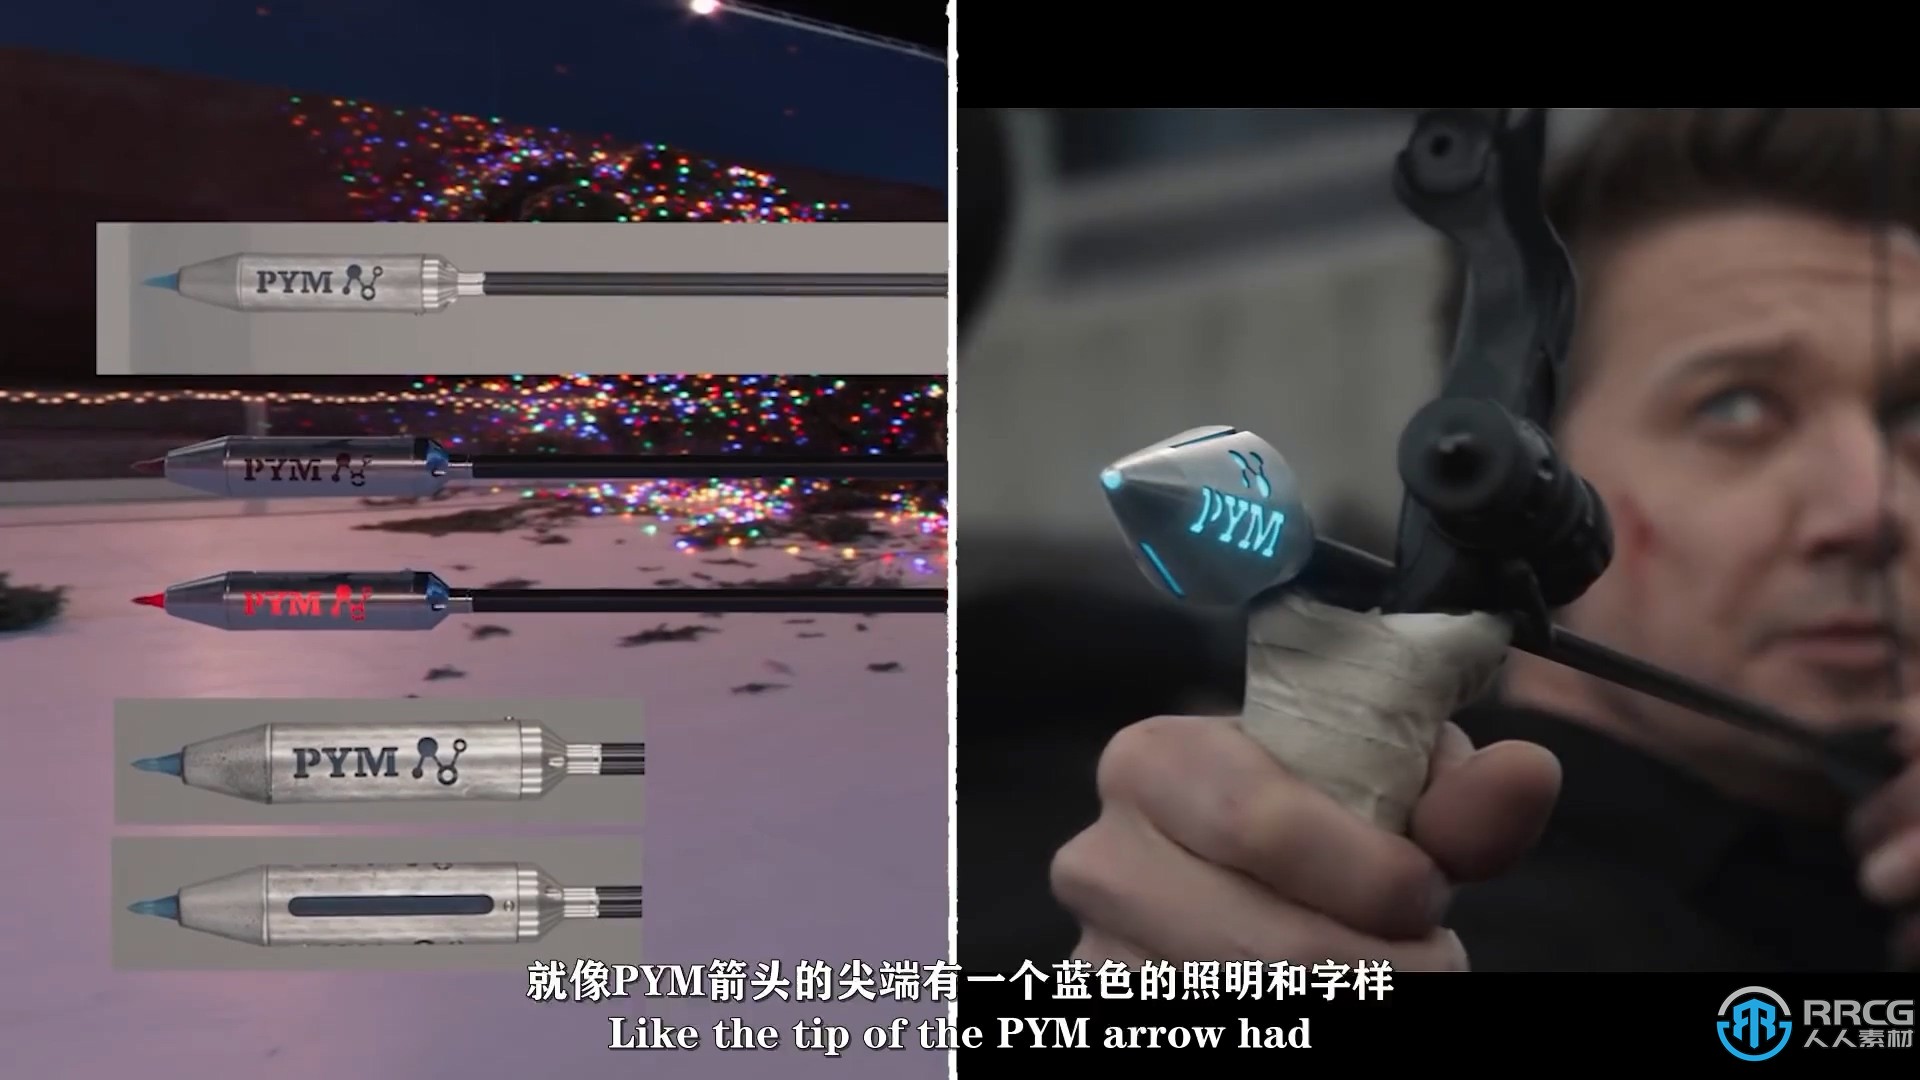 【中文字幕】漫威美剧《鹰眼》VFX视效解析视频  箭矢完整创建过程